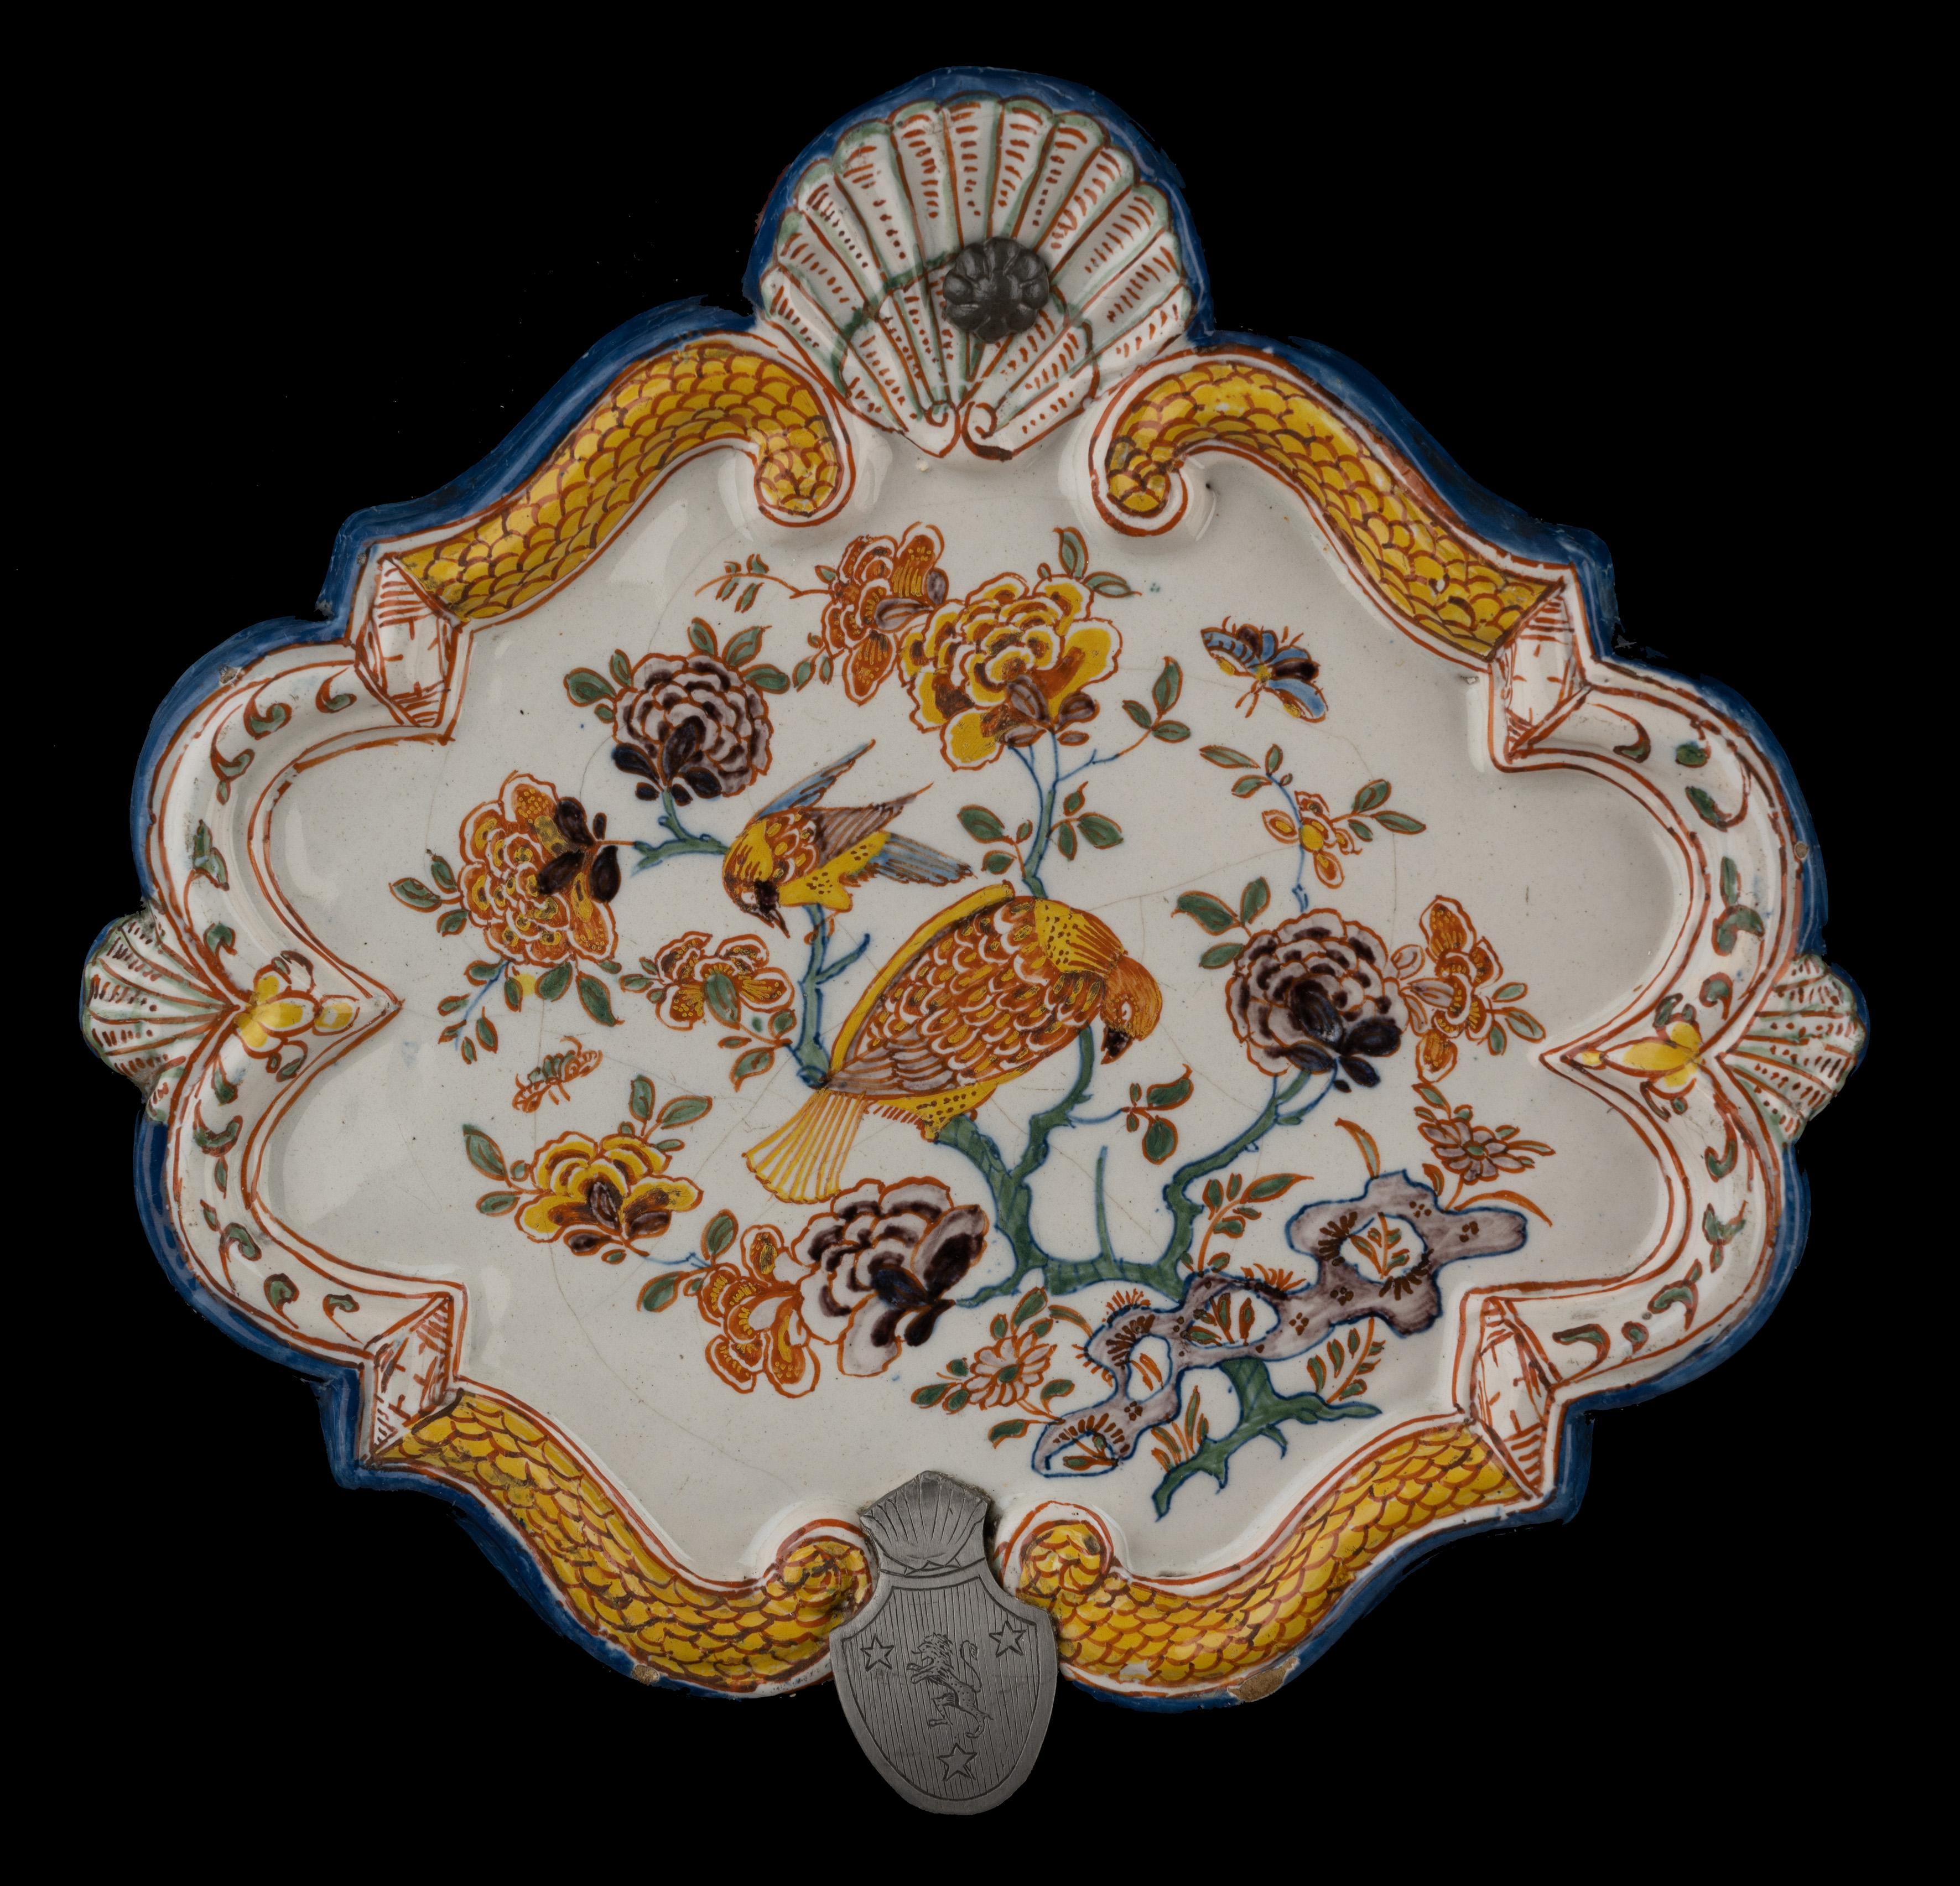 Polychrome Plakette mit floralem Chinoiserie-Dekor. Delft, 1740-1760

Die rautenförmige Plakette hat einen erhöhten, akkoladenförmigen Rand, der oben von einer großen Muschel mit Aufhängeloch und unten von einer kleineren Muschel unterbrochen wird.